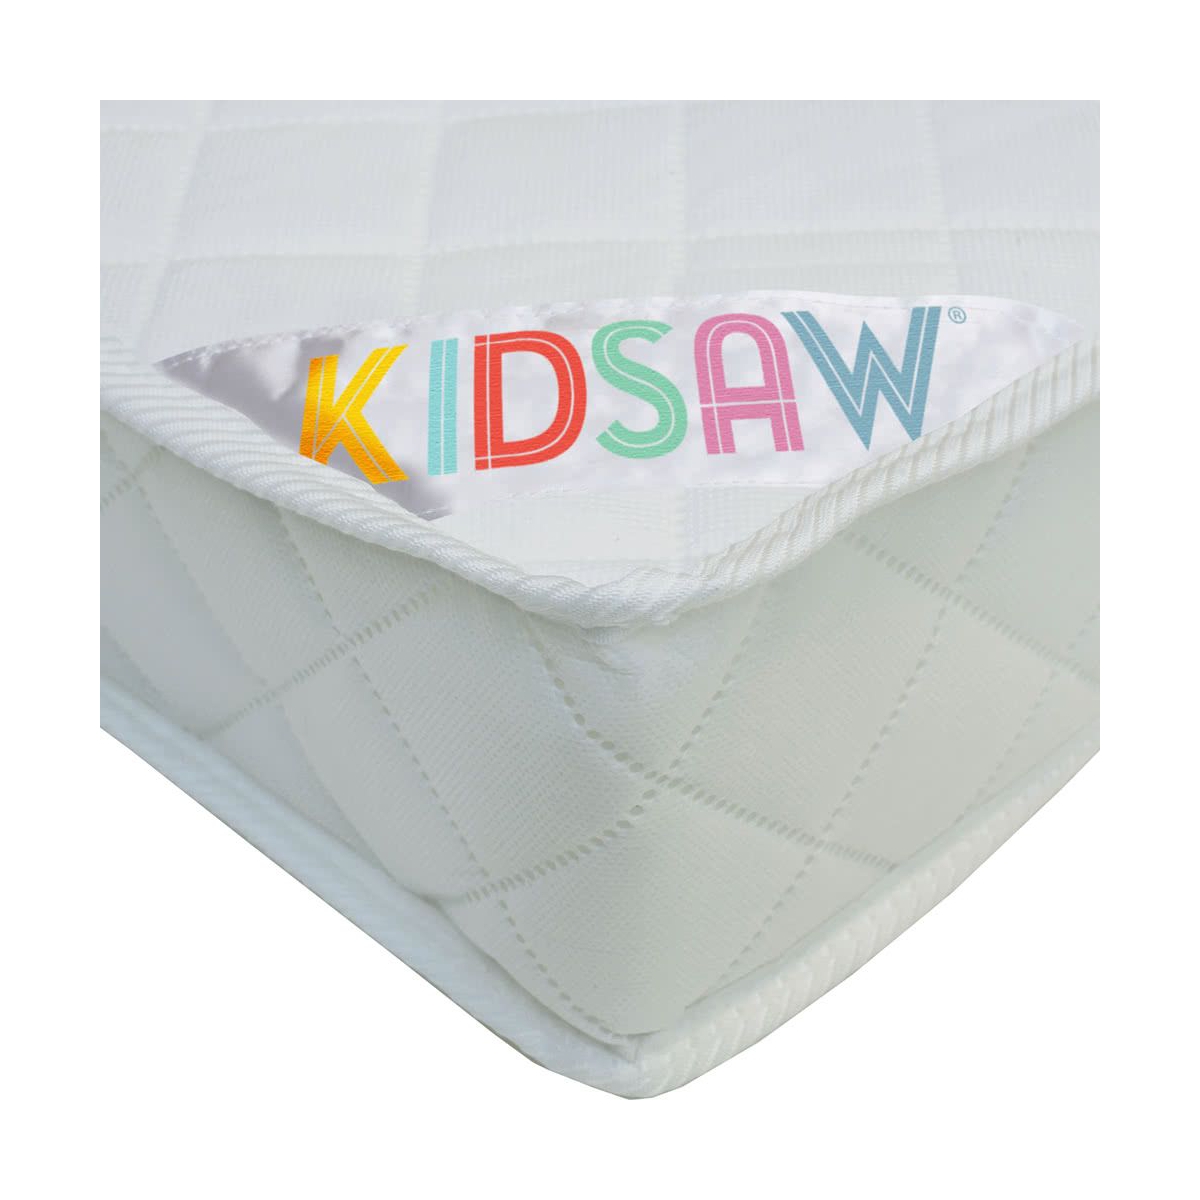 Kidsaw Deluxe Sprung Junior Toddler Mattress